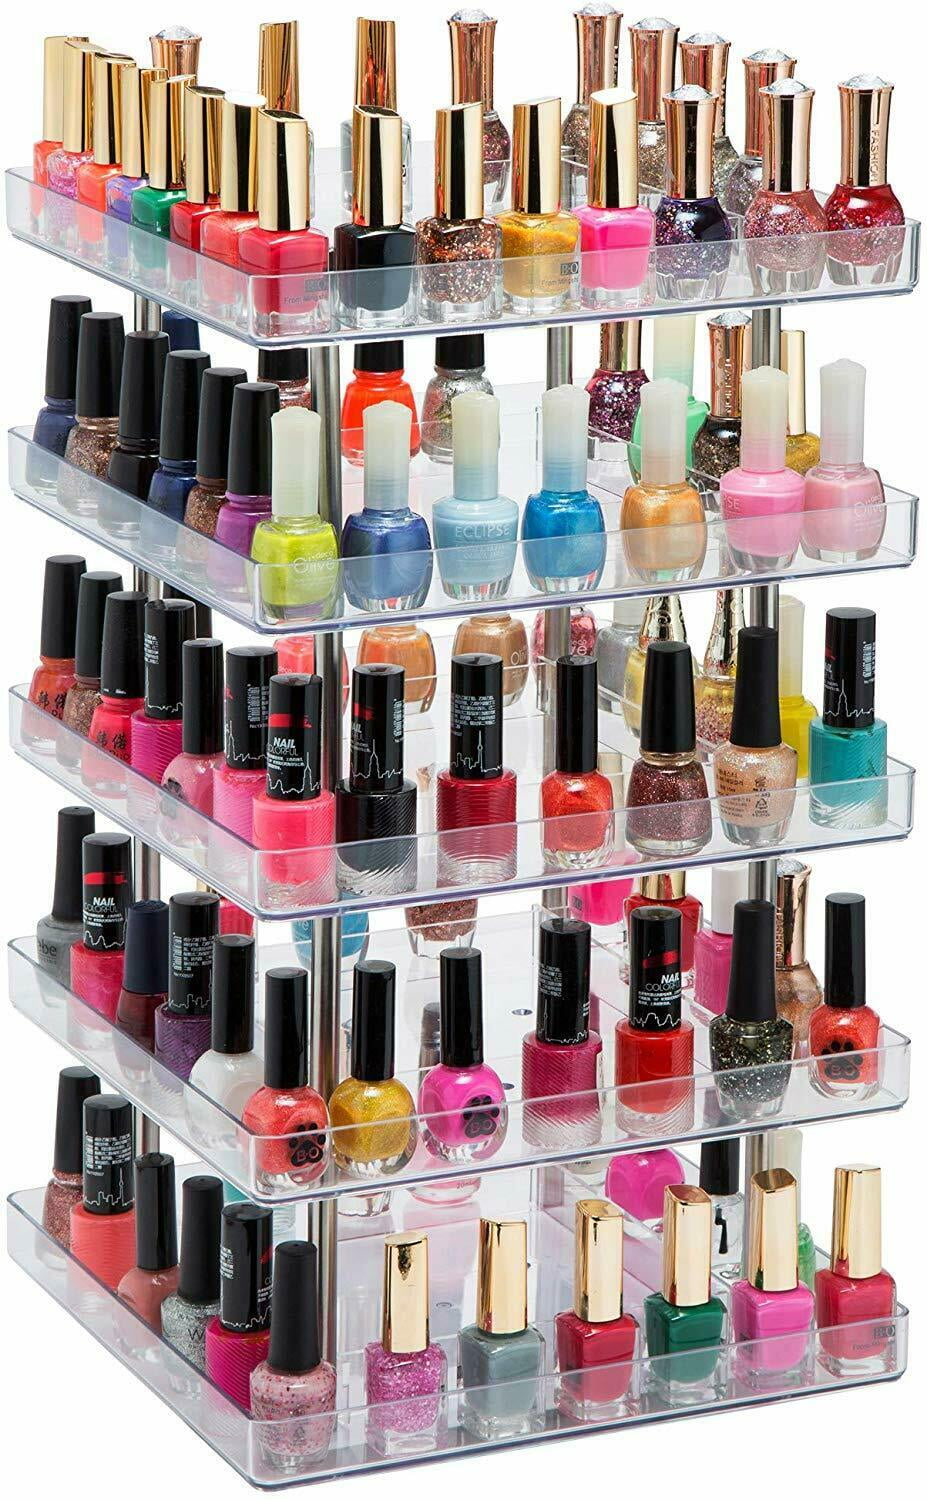 Acrylic nail polish display stand, nail polish display - Bespoke service